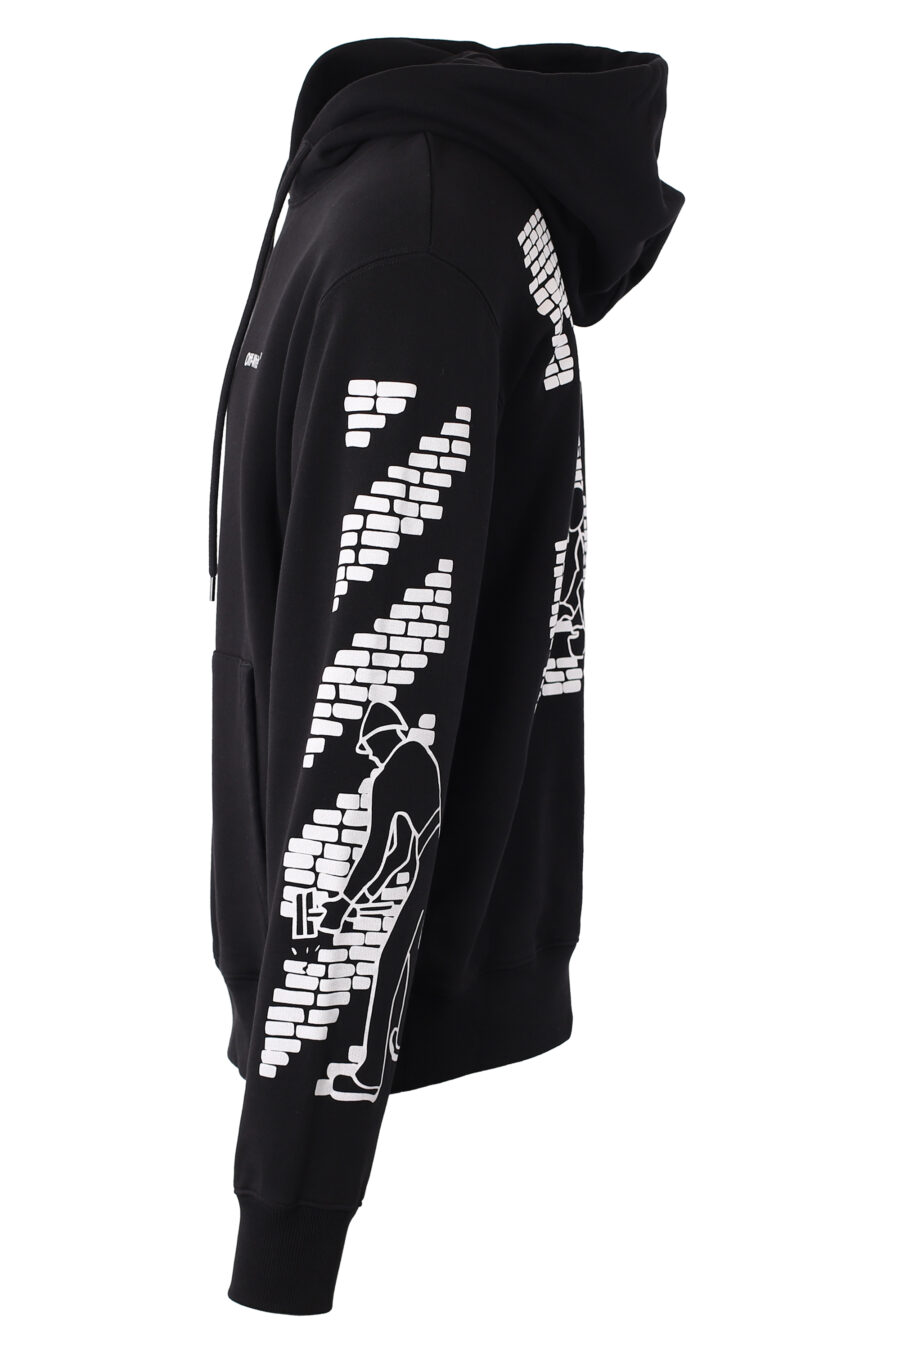 Camisola preta com capuz e logótipo "Bricks" branco - IMG 1543